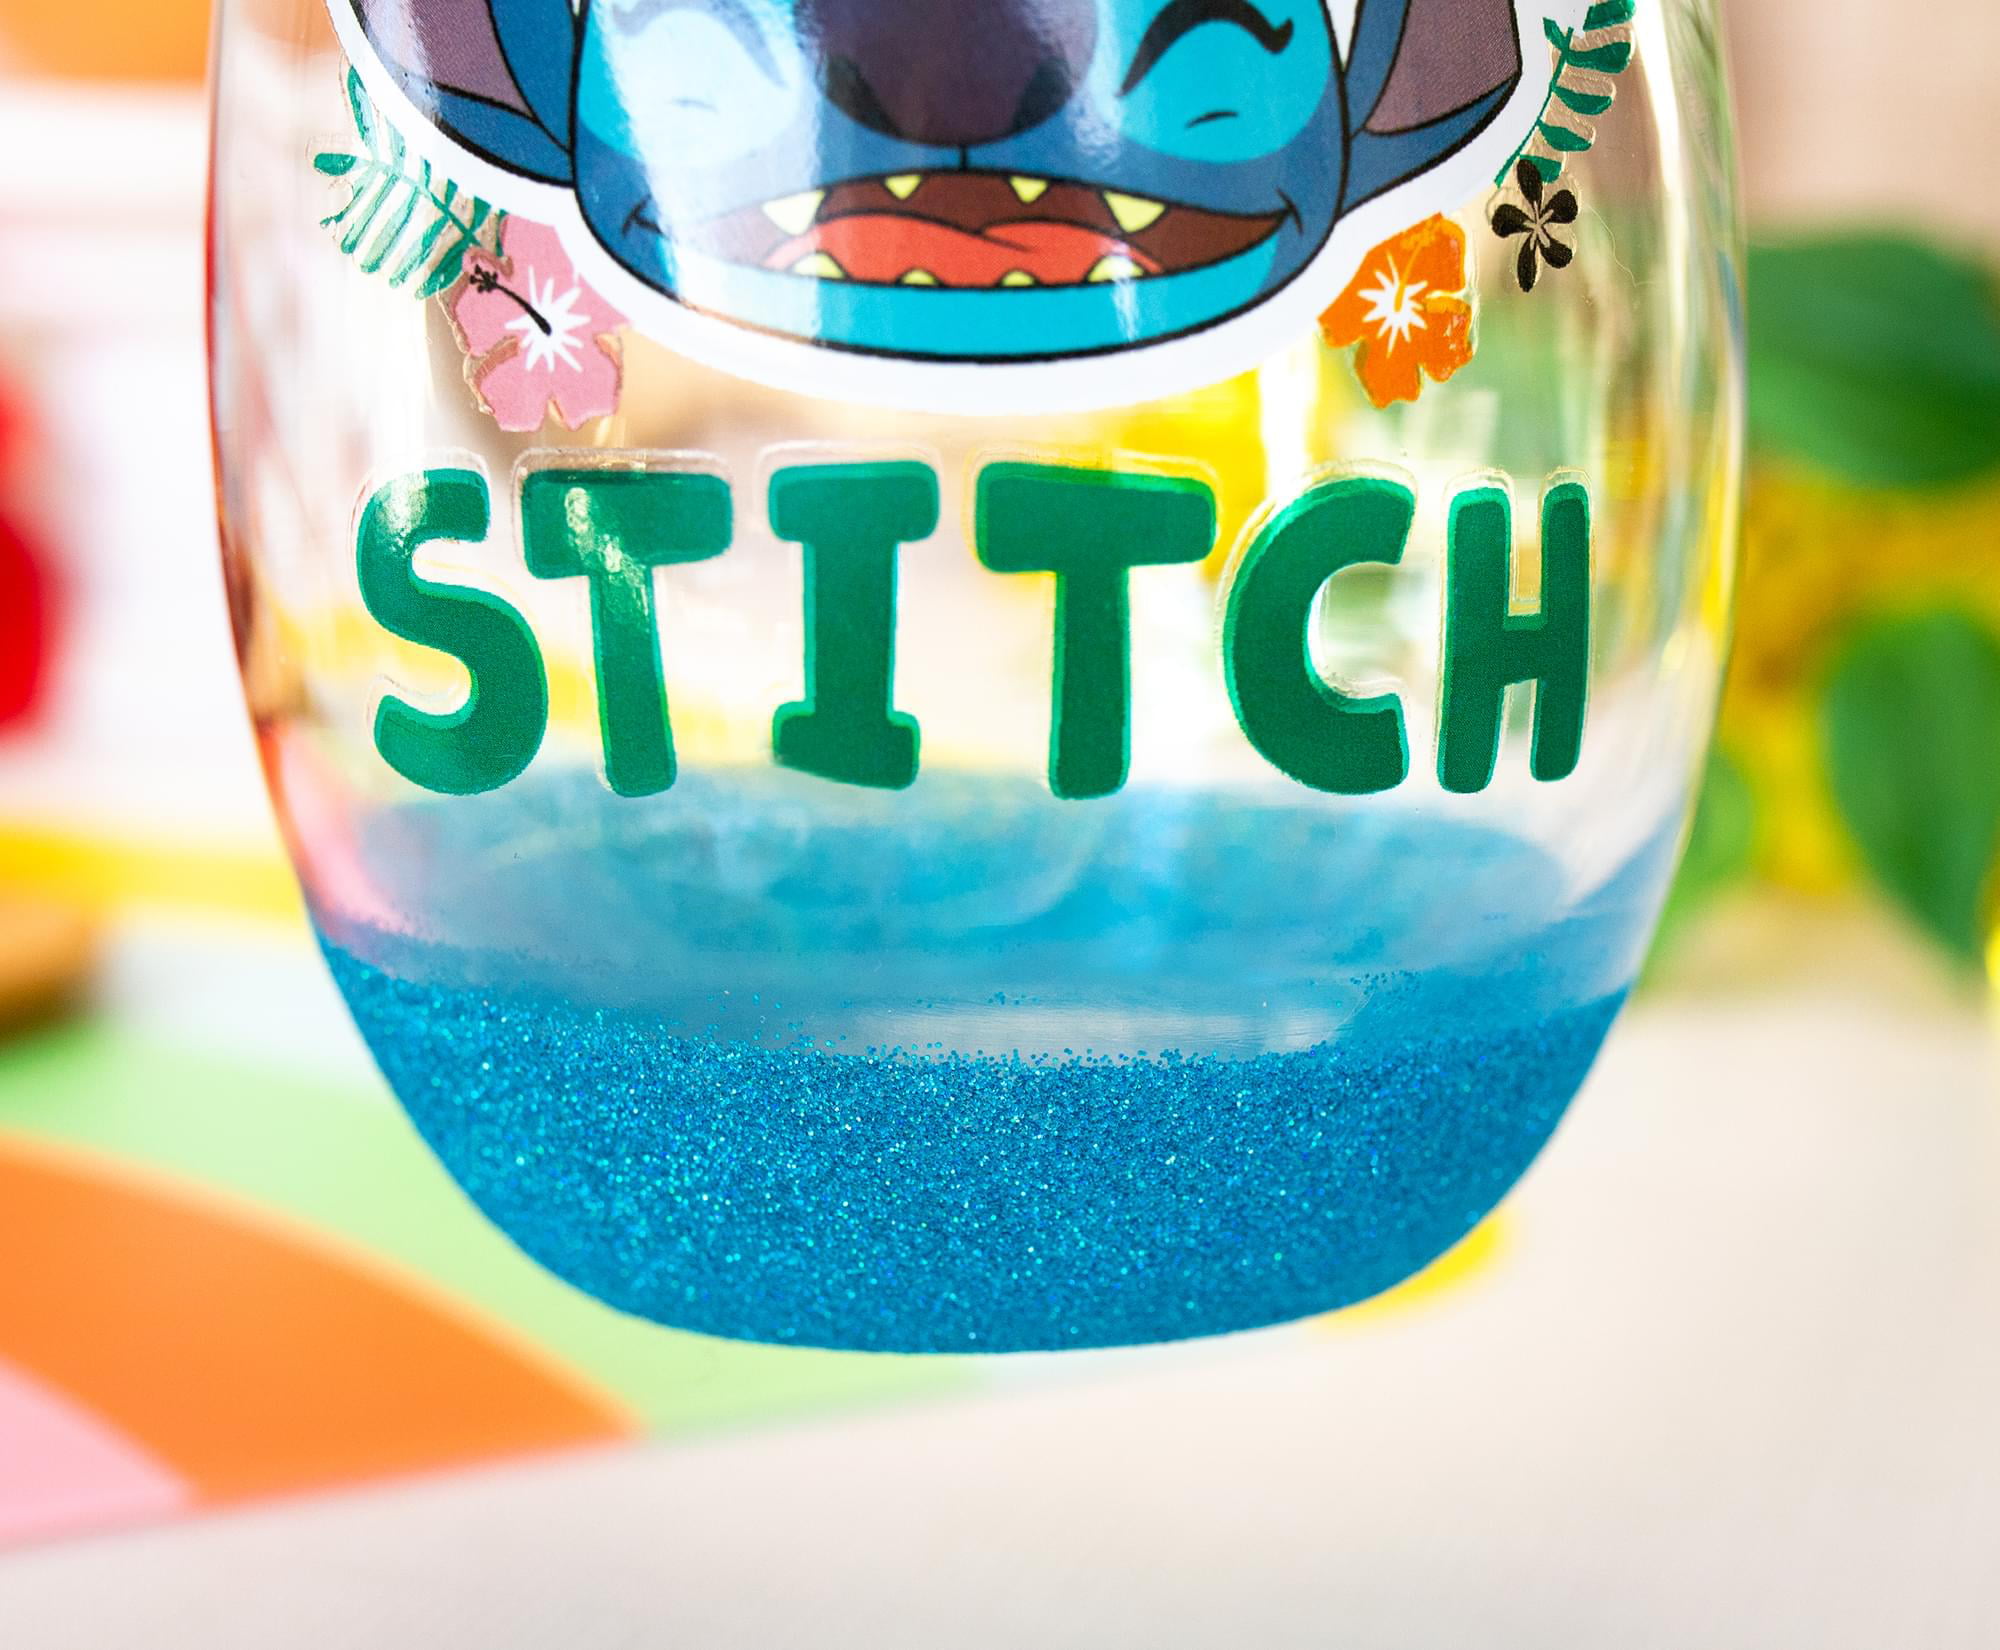 Disney Lilo & Stitch 20oz Stemless Wine Glass